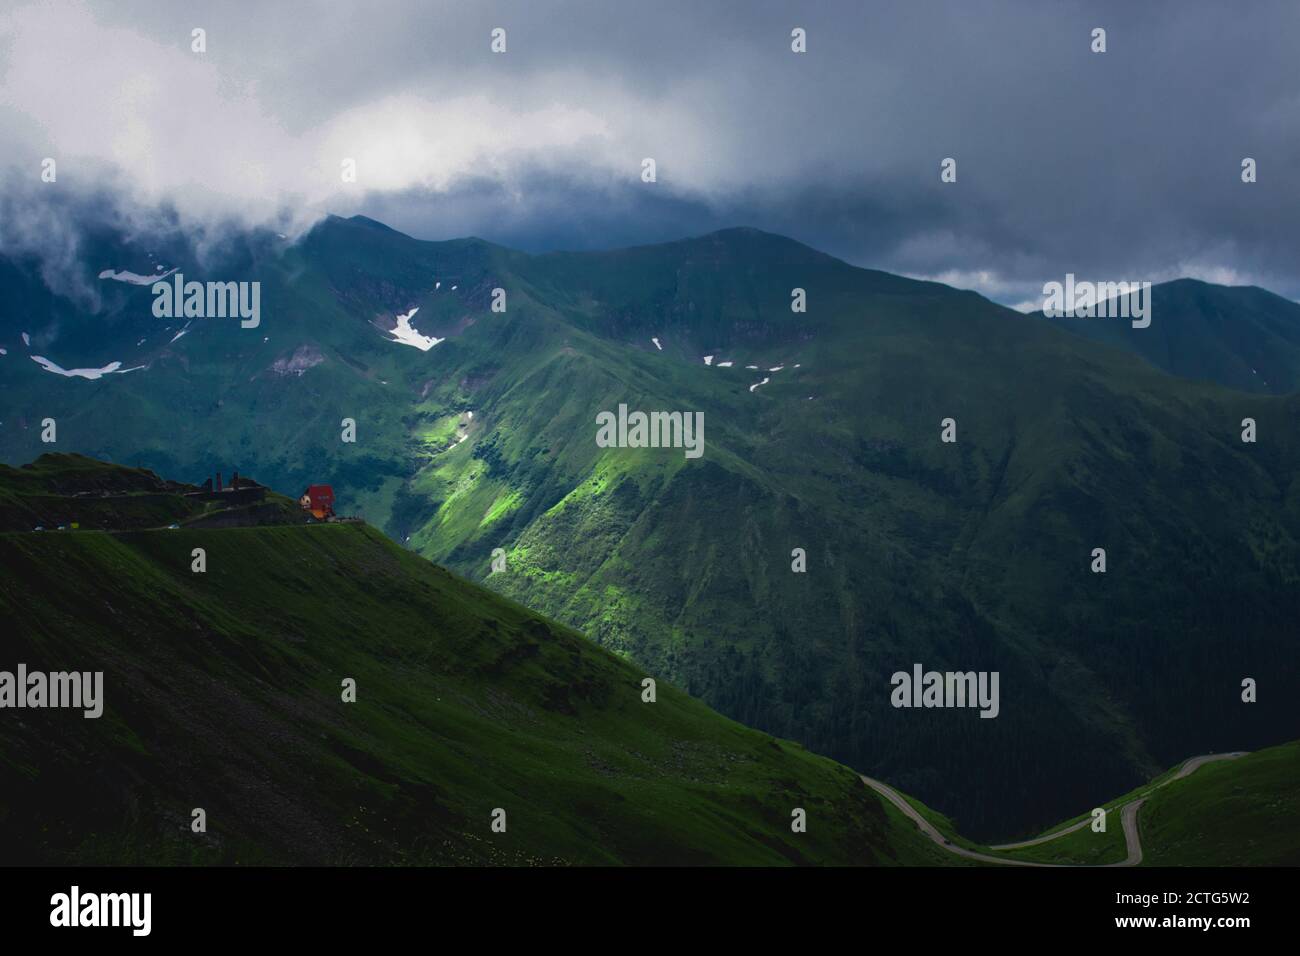 Mountain landscape, Romania view Stock Photo